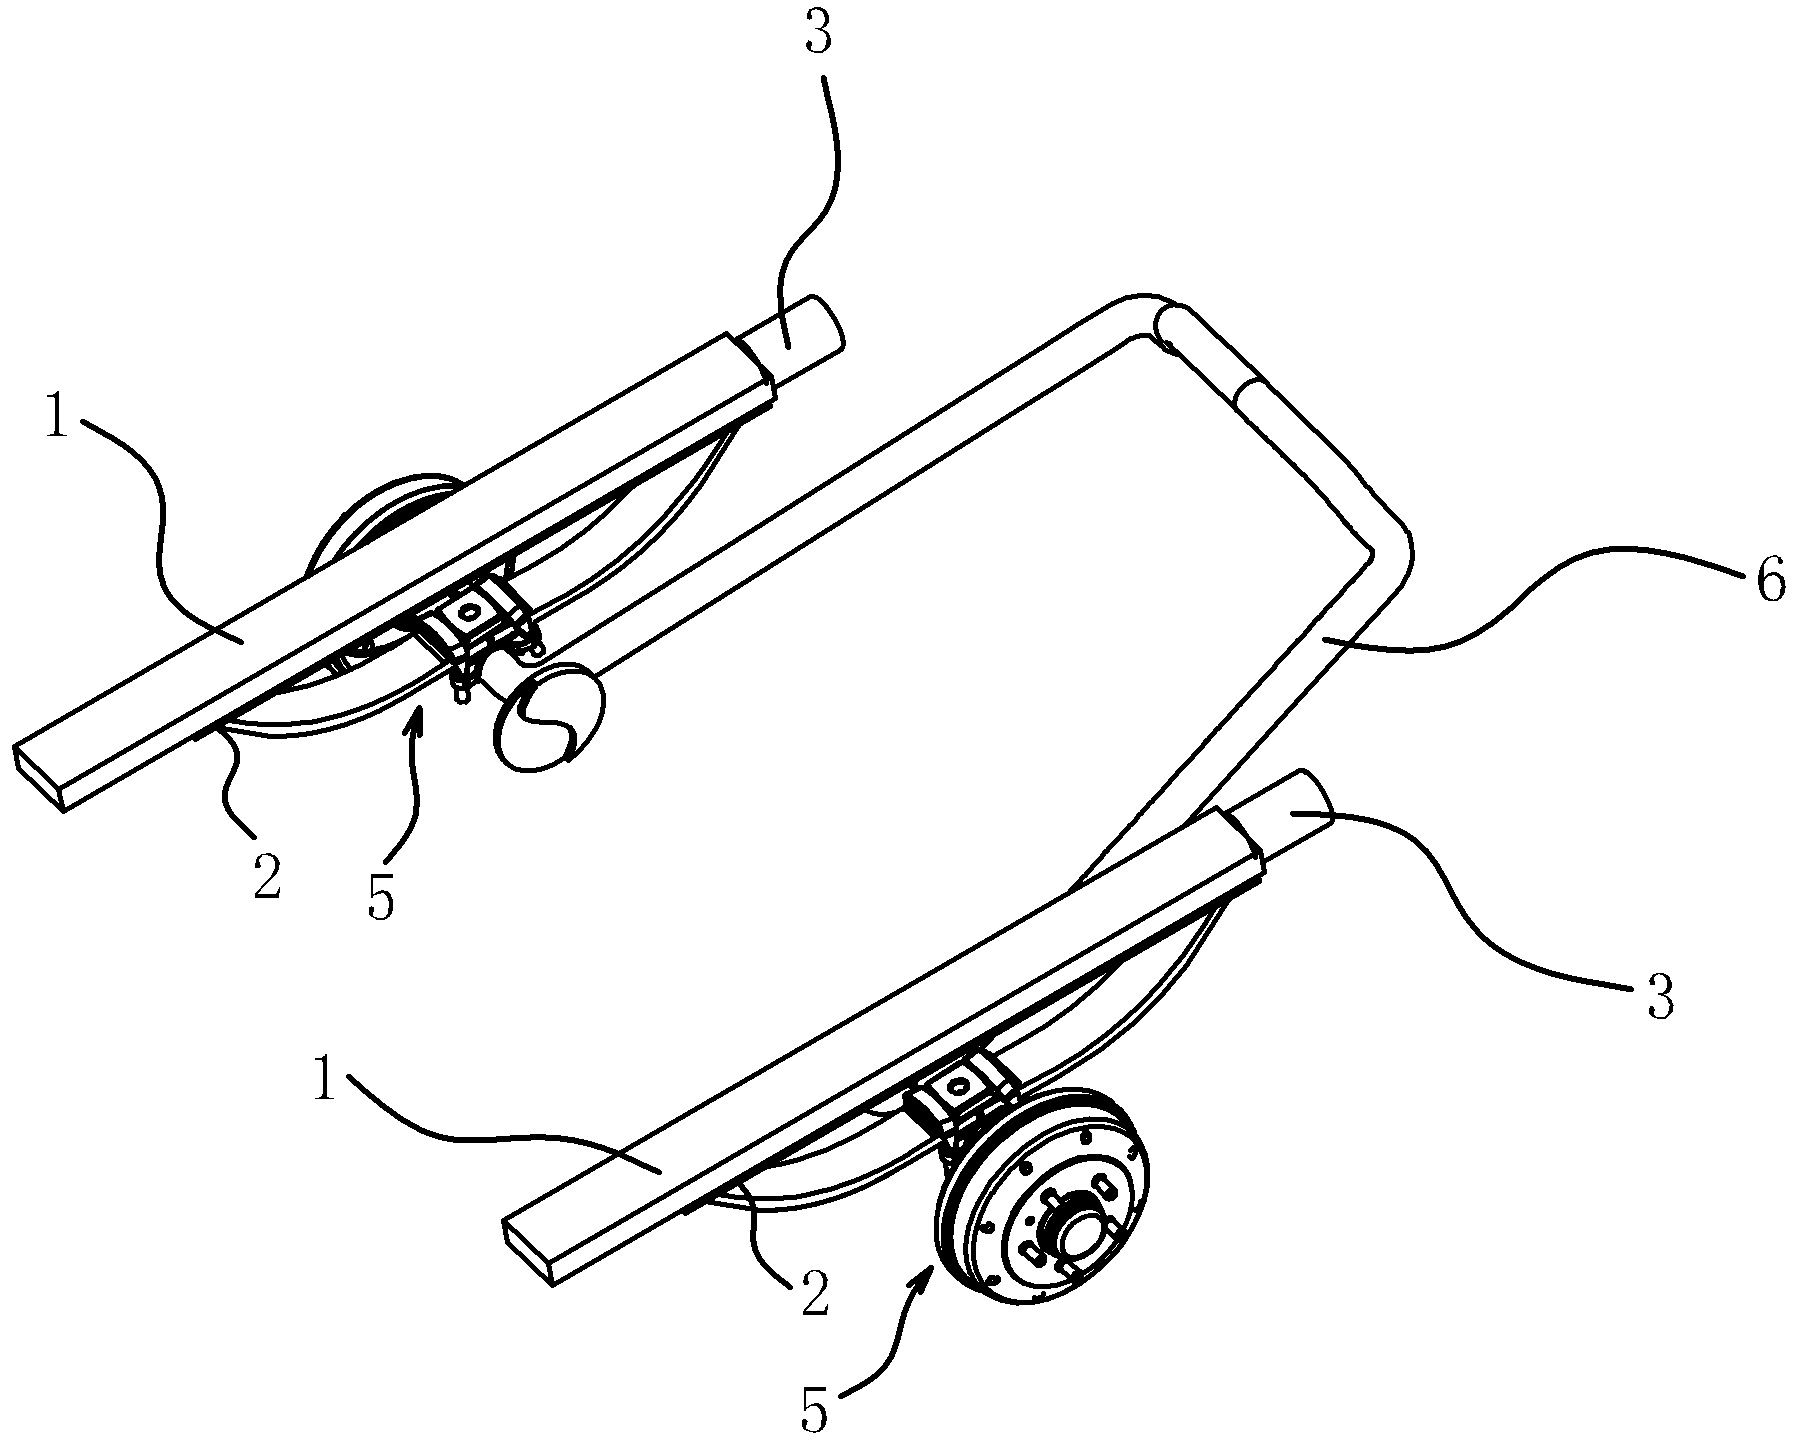 Back wheel position adjusting device for vehicle and vehicle with adjusting device